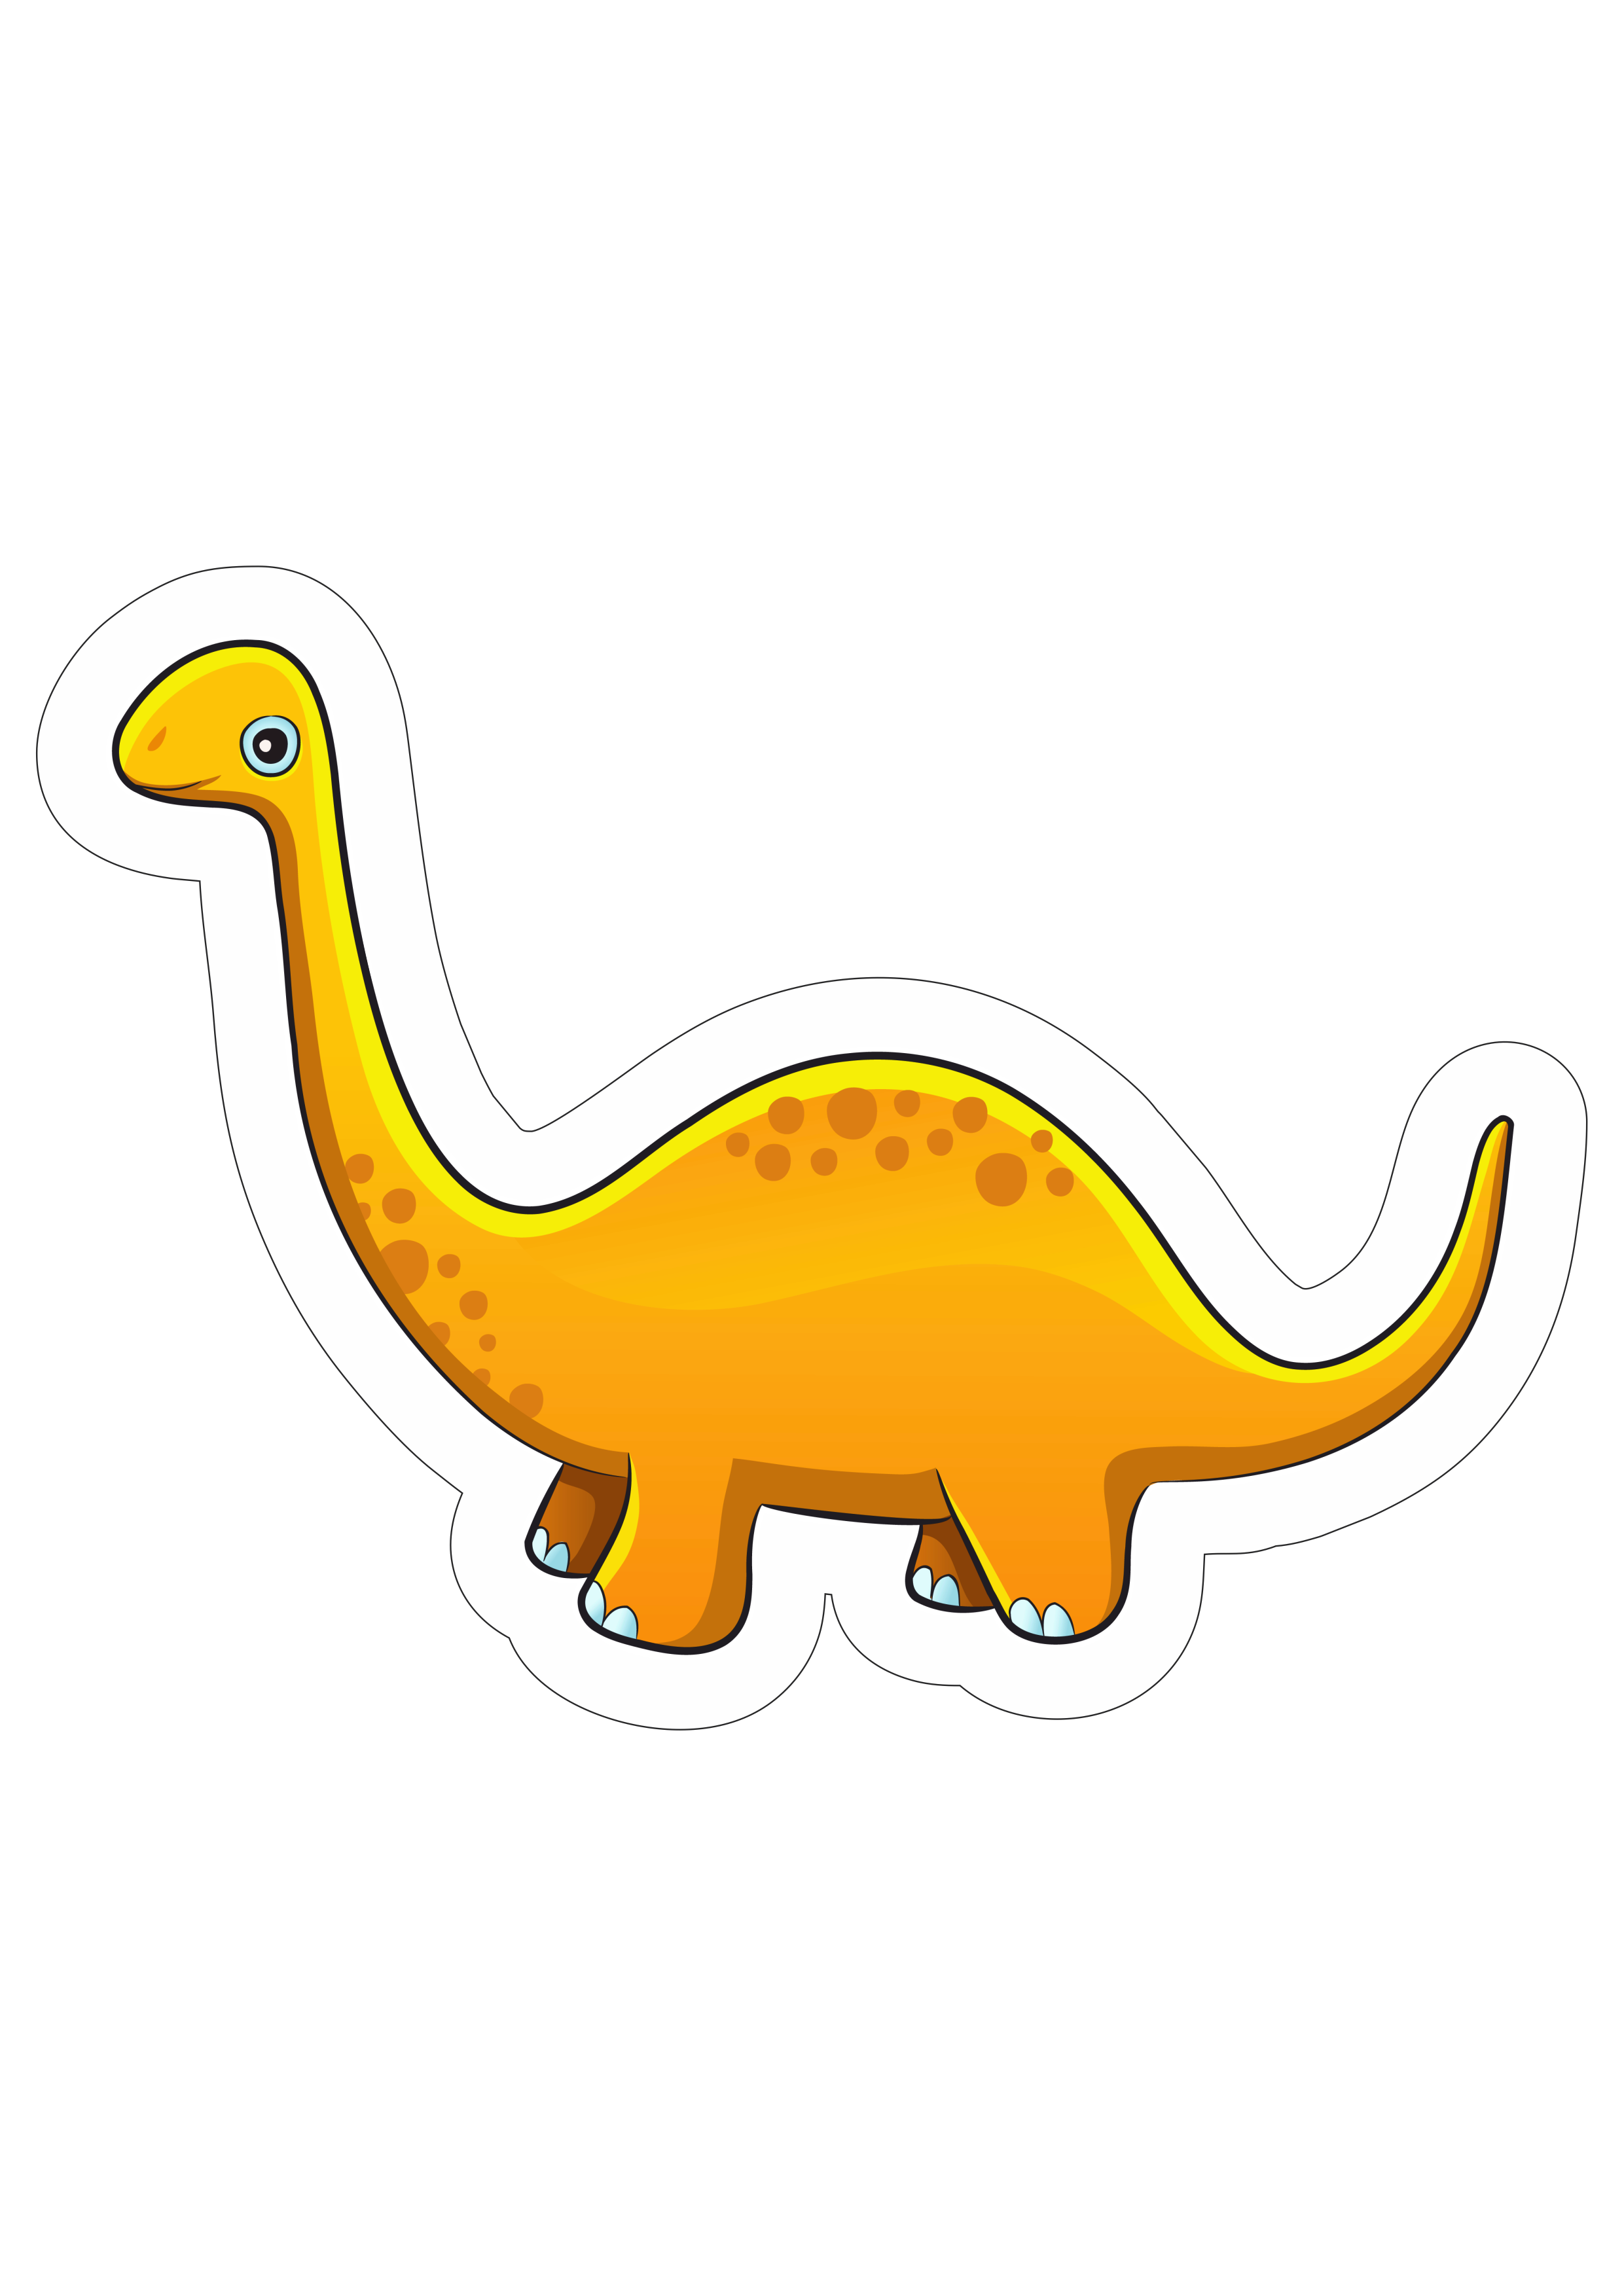 Baby Dinossauro braquiossauro amarelo desenho simples infantil com contorno cute fofinho png